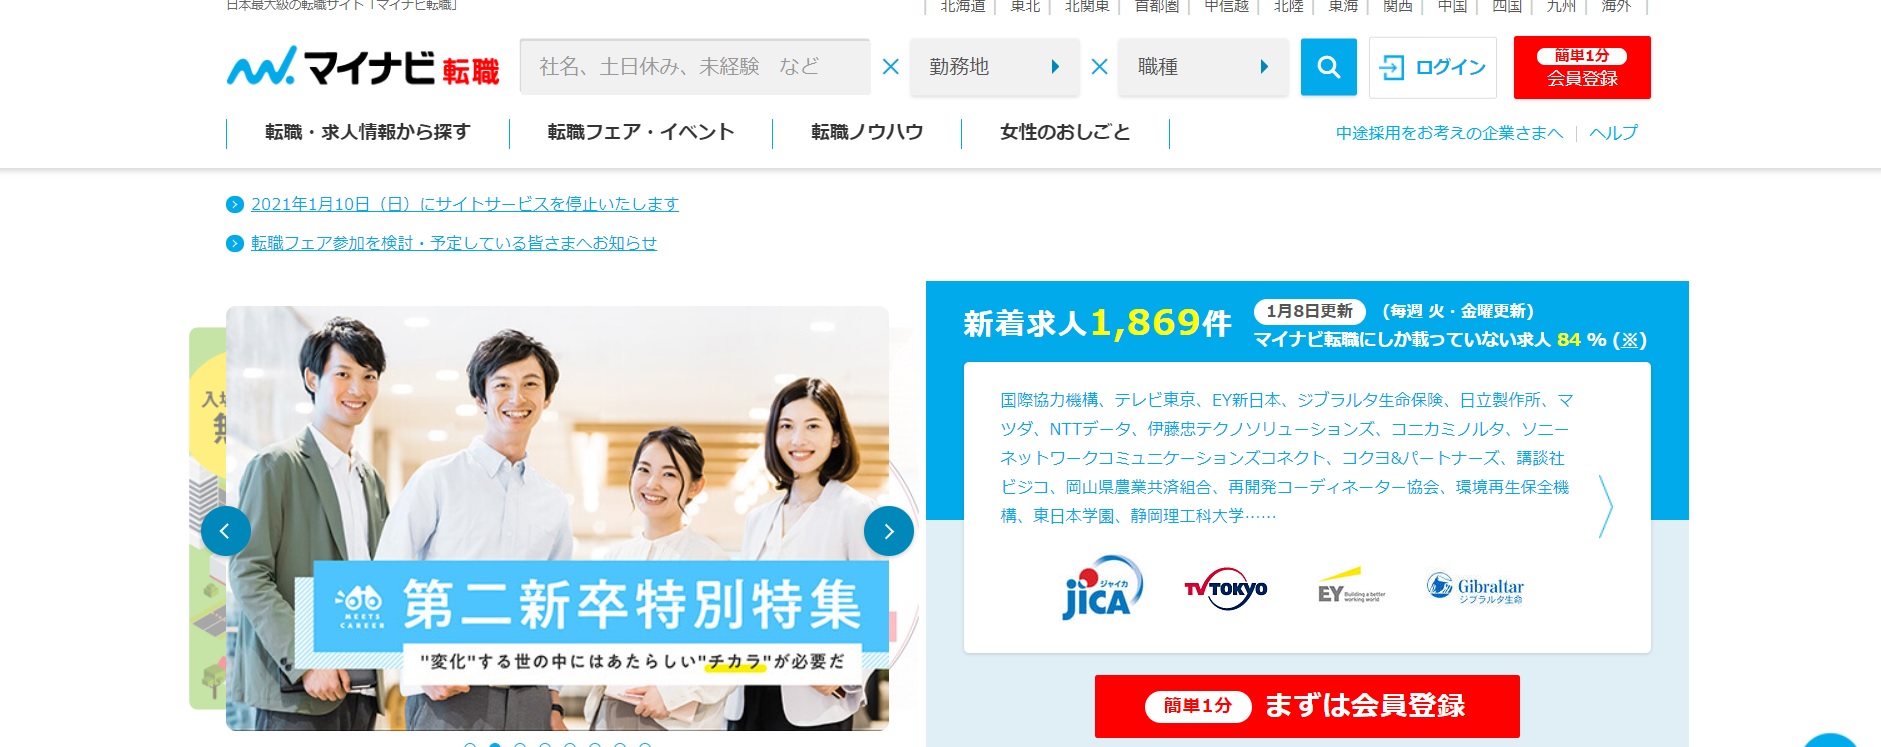 일본 구직 홈페이지(마이나비) 대문 사진